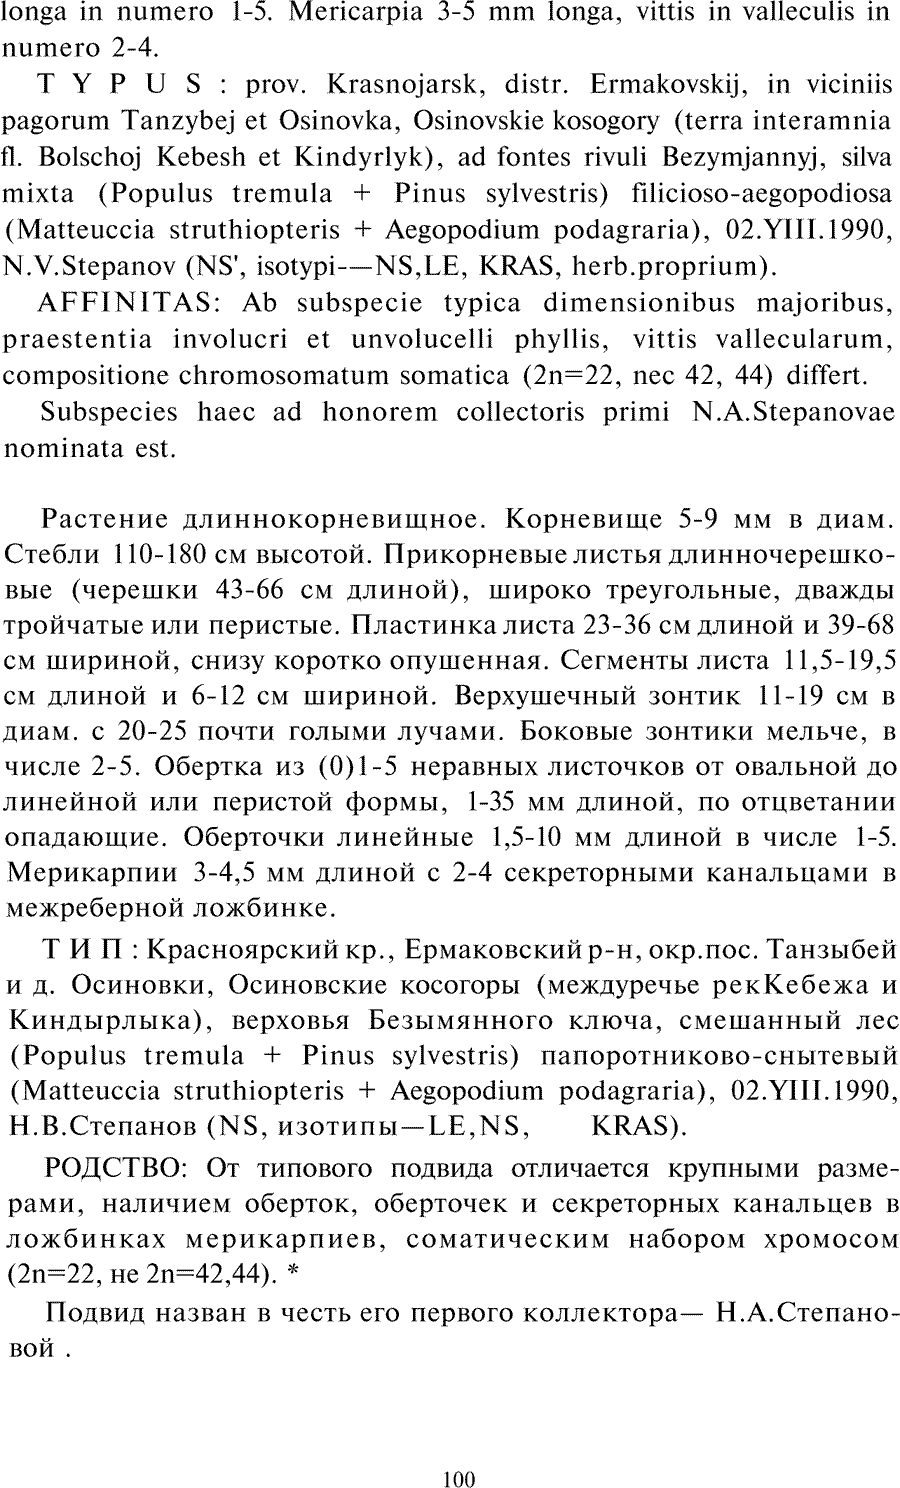 https://forum.plantarium.ru/misc.php?action=pun_attachment&amp;item=27775